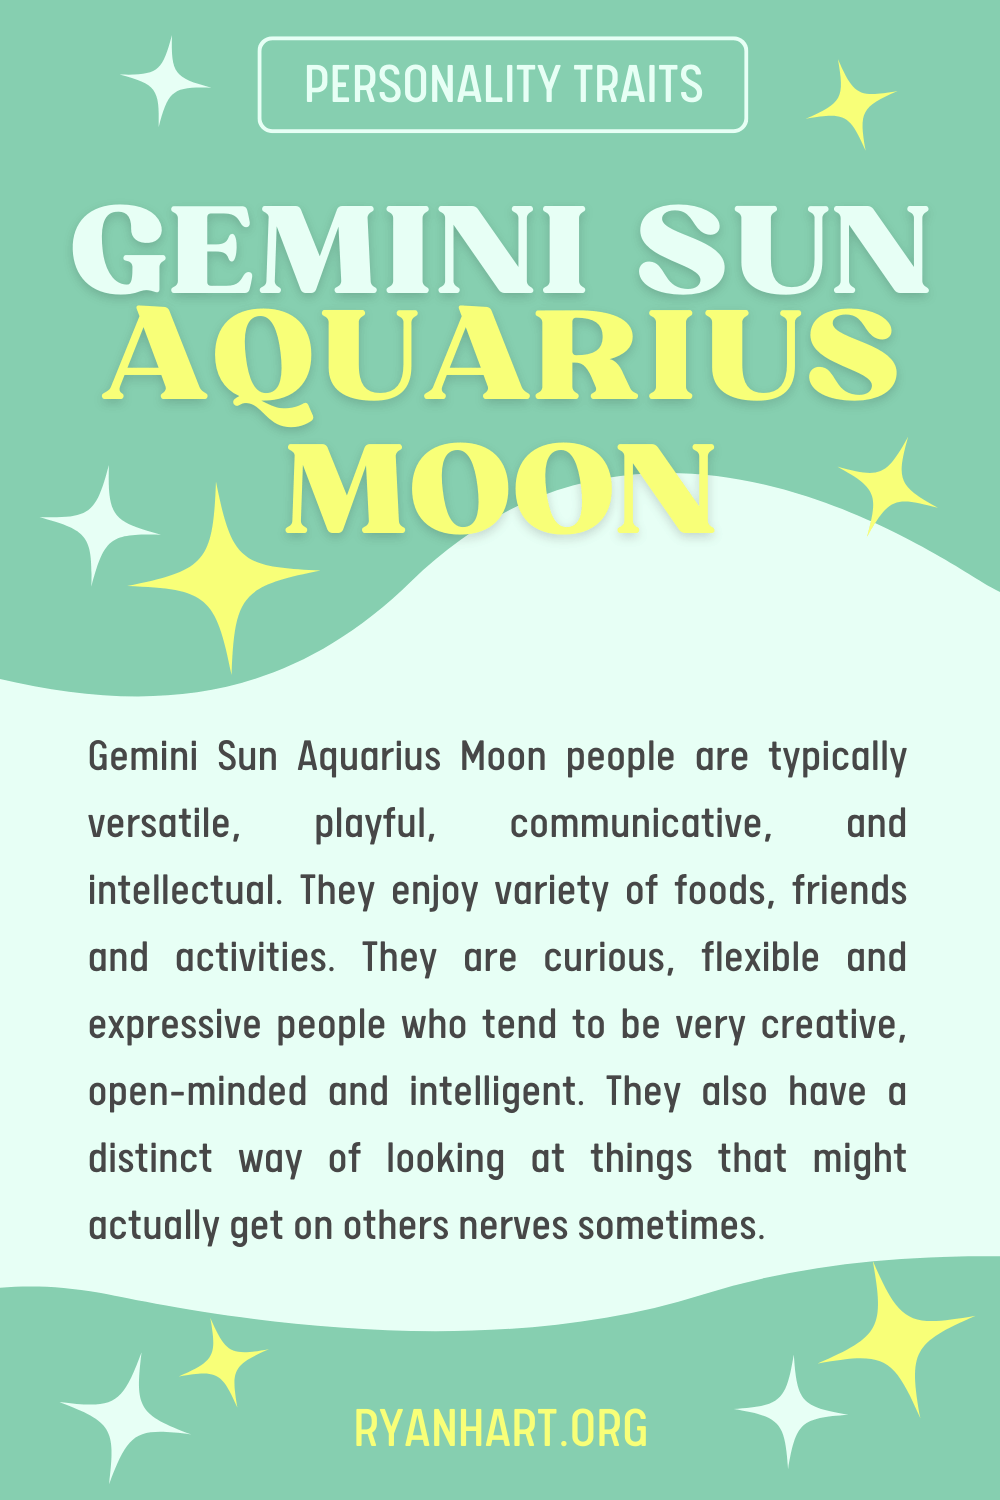 Gemini Sun Aquarius Moon Description